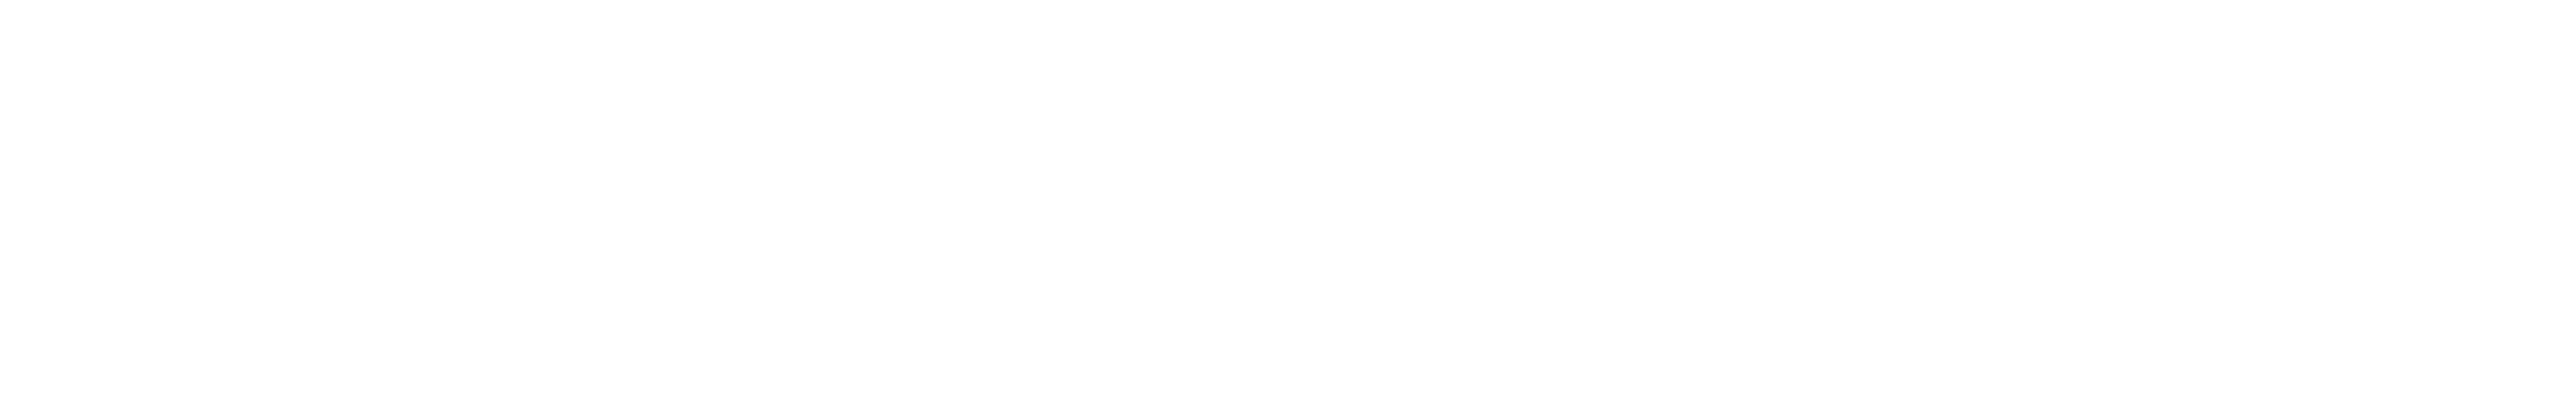 RRAI logo